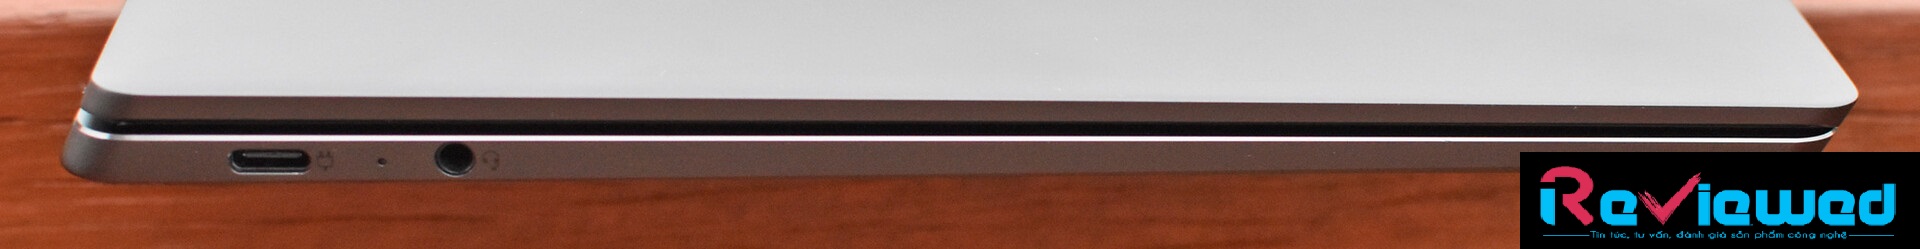 Đánh giá laptop Lenovo IdeaPad S940: Mỏng hơn, nhẹ hơn, đẹp hơn !, chuyên trang tư vấn laptop